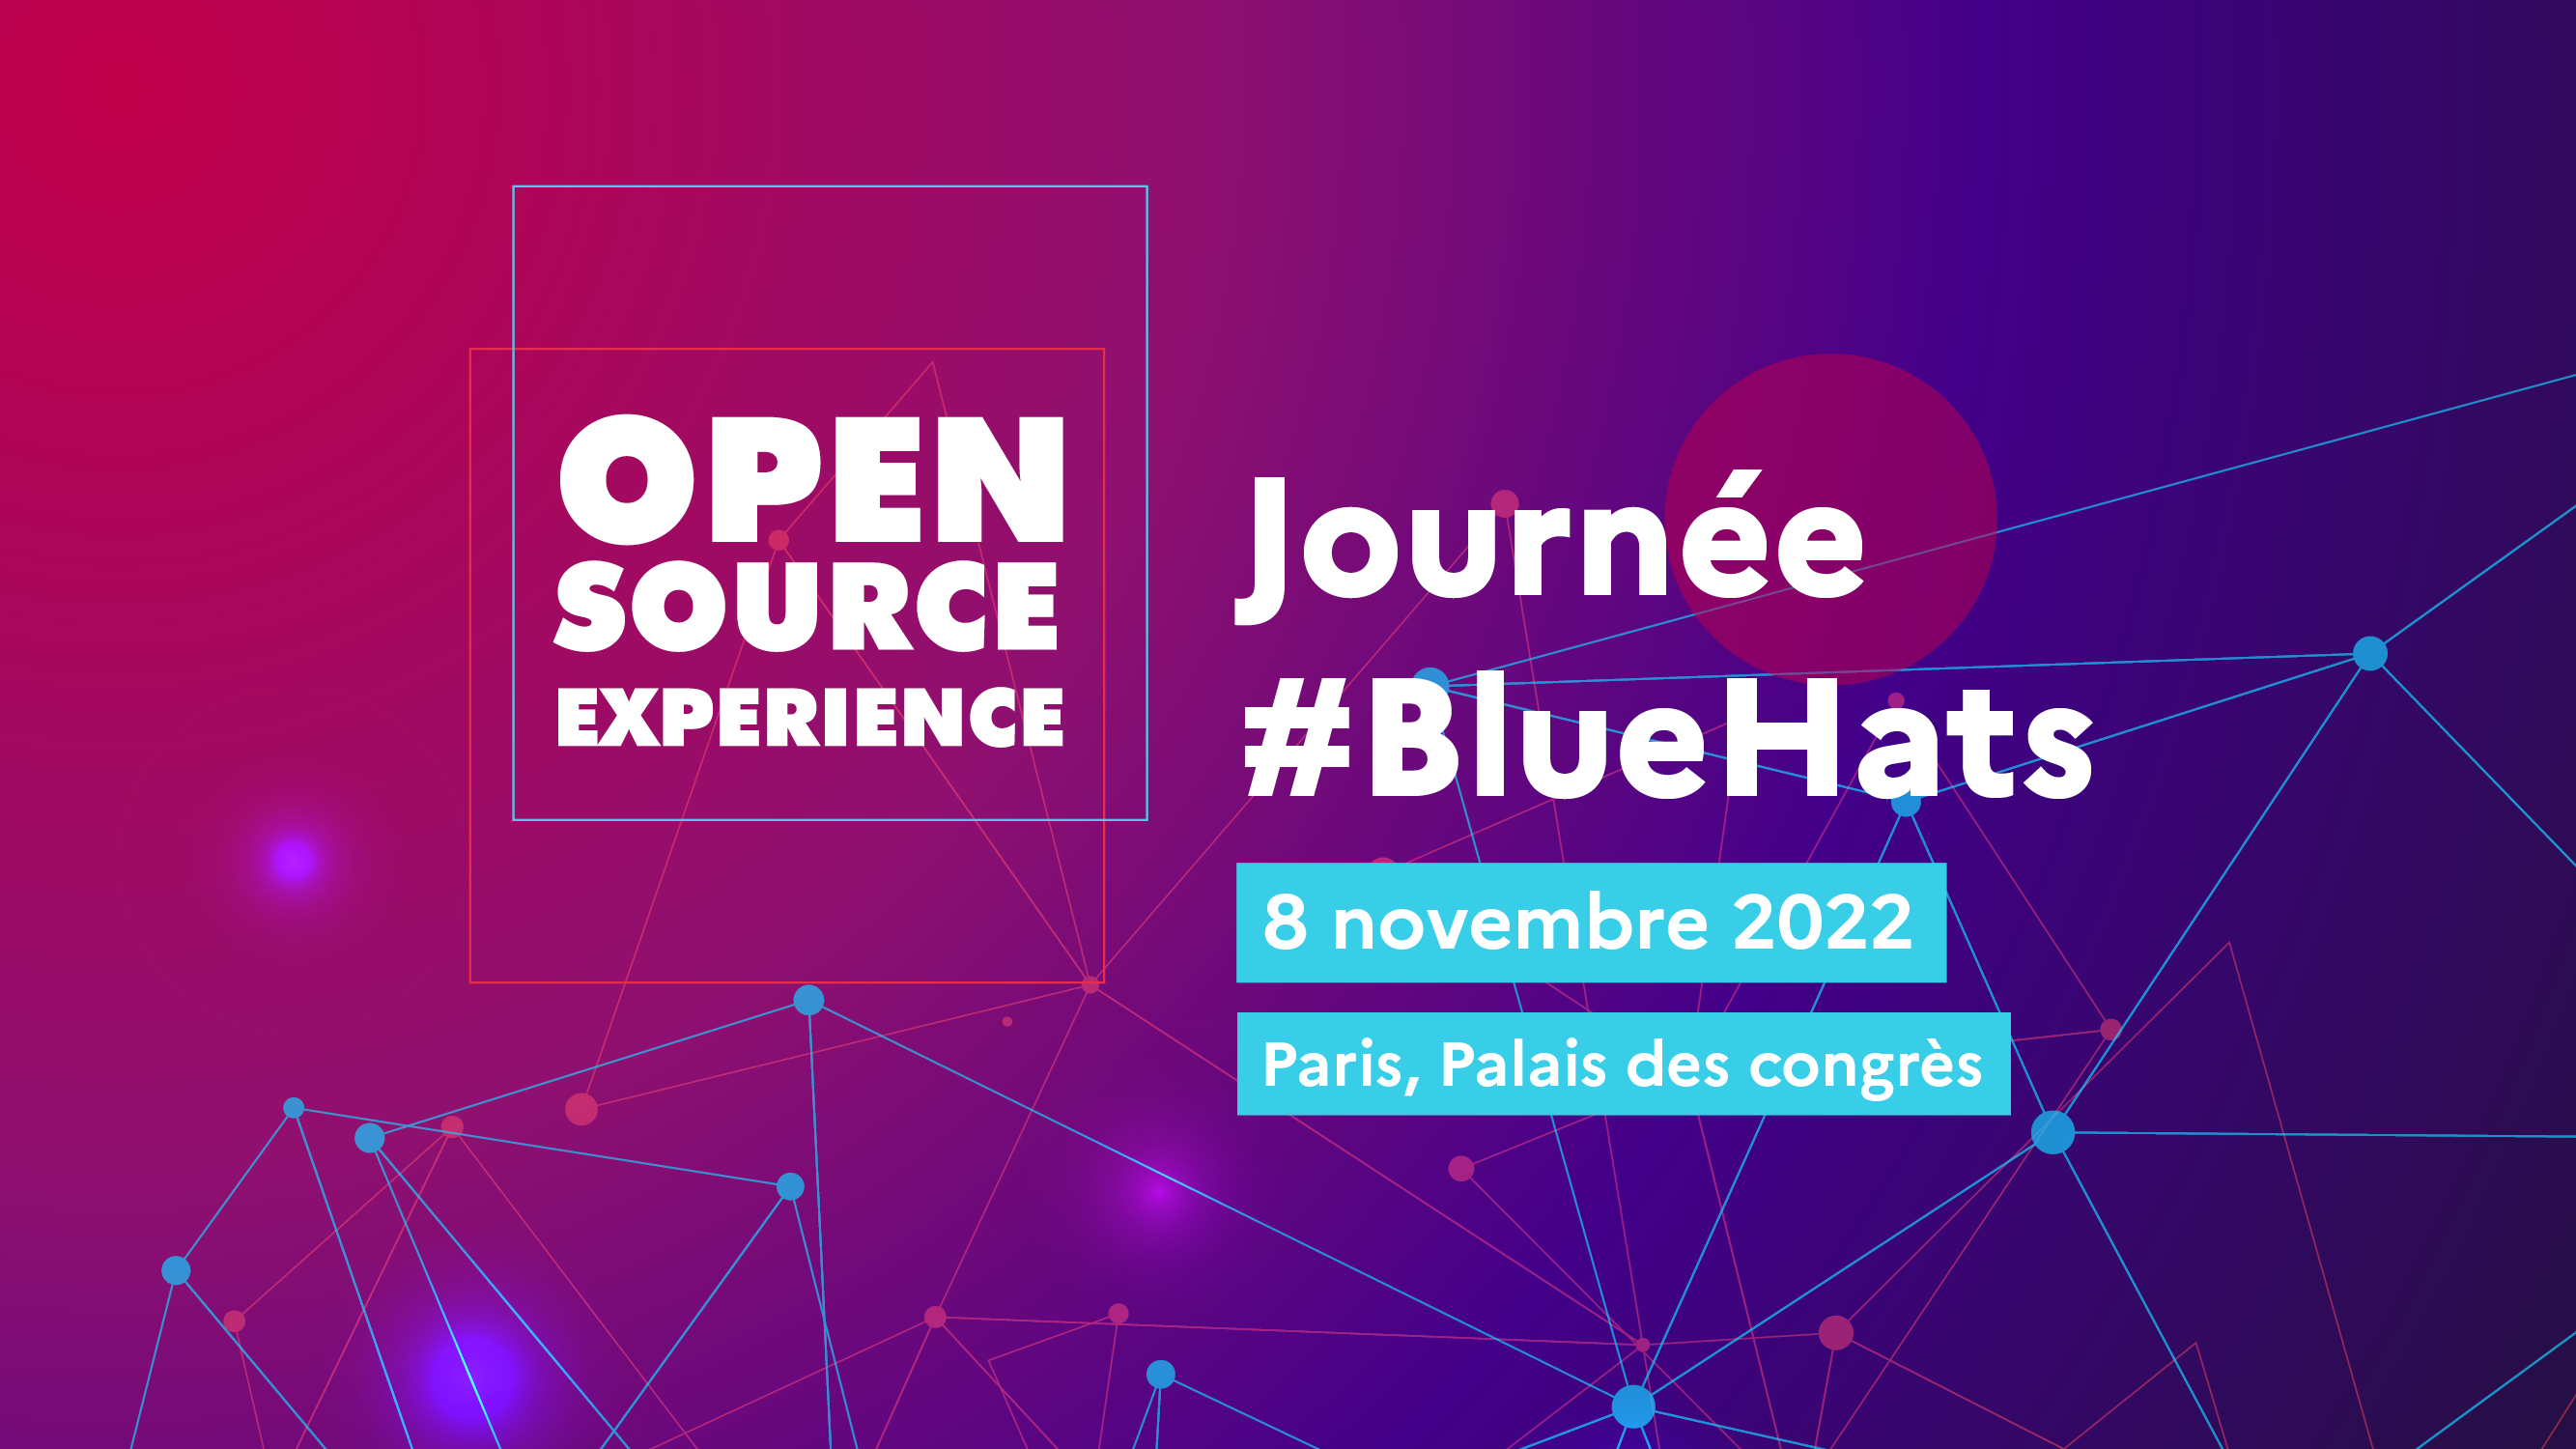 Open Source Experience Journée #BlueHats 8 novembre 2022 Paris, Palais des congrès